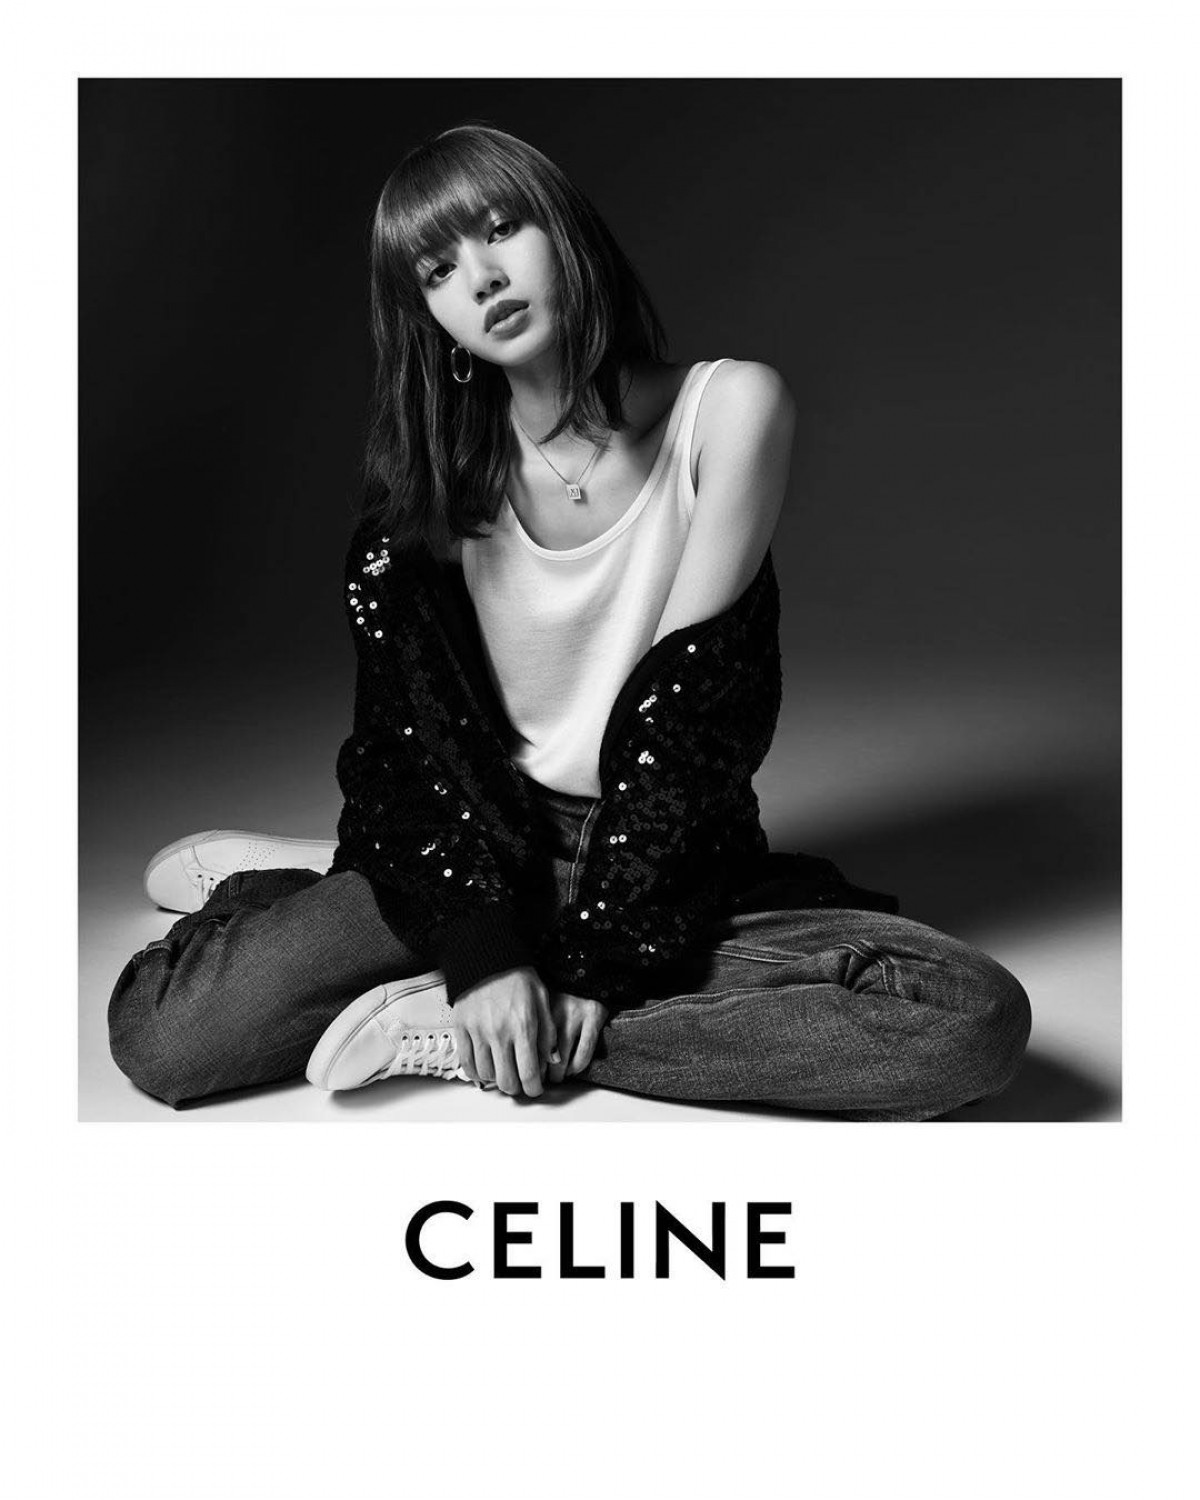 Lisa chính thức trở thành Đại sứ toàn cầu đầu tiên của thương hiệu Celine.